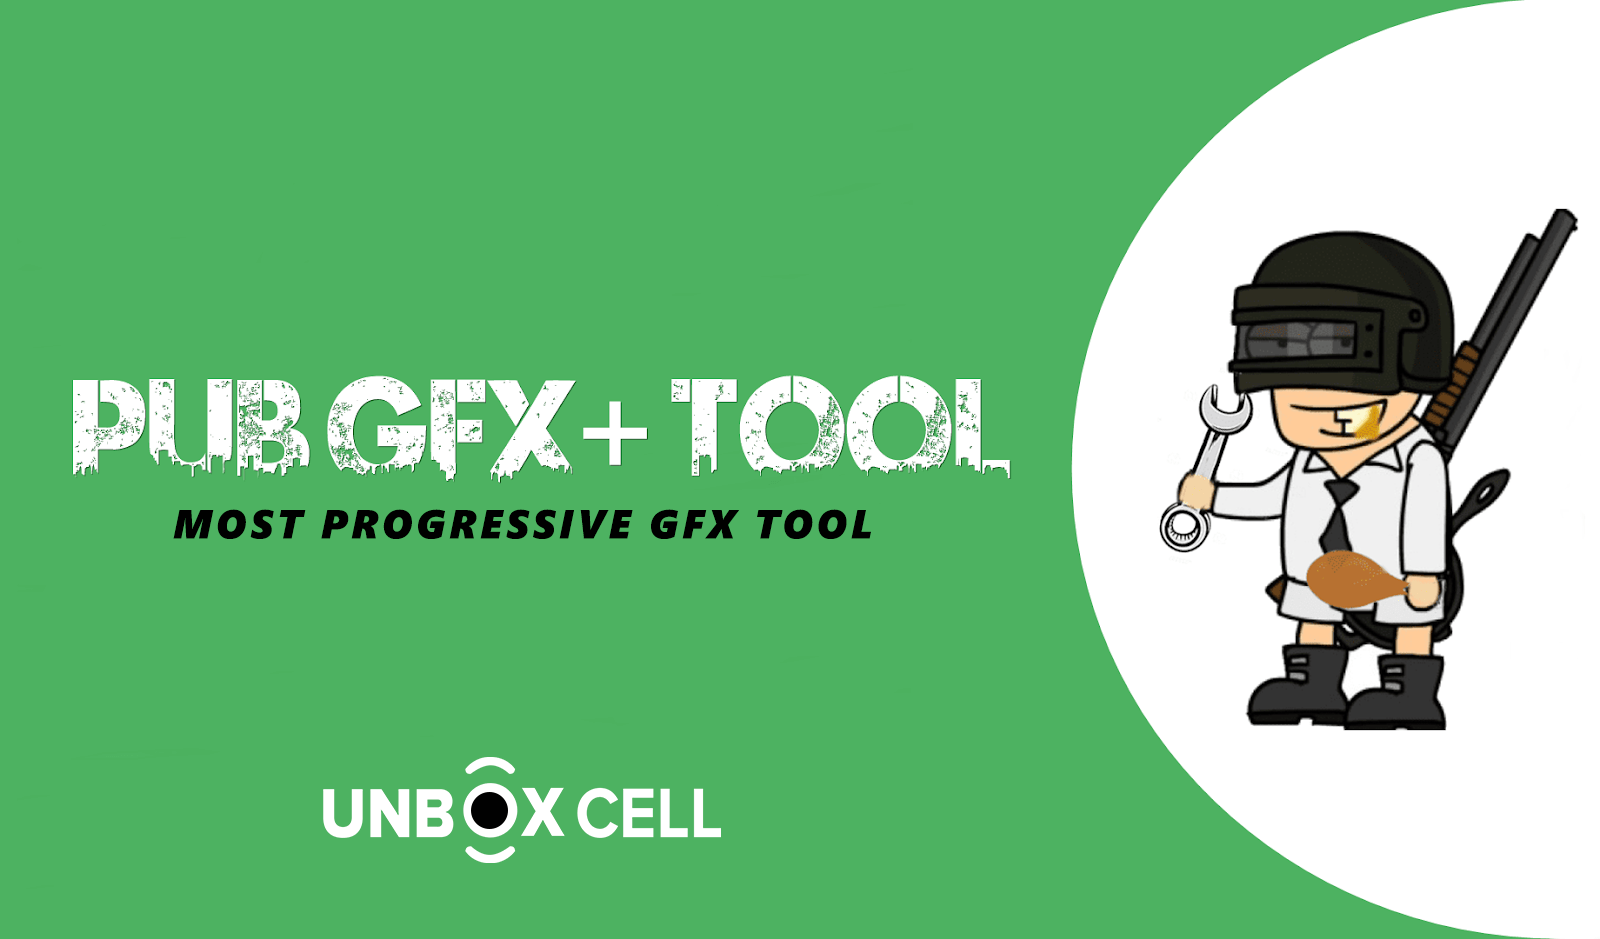 PUB Gfx+ Tool 1 GFX Tool- unbox cell